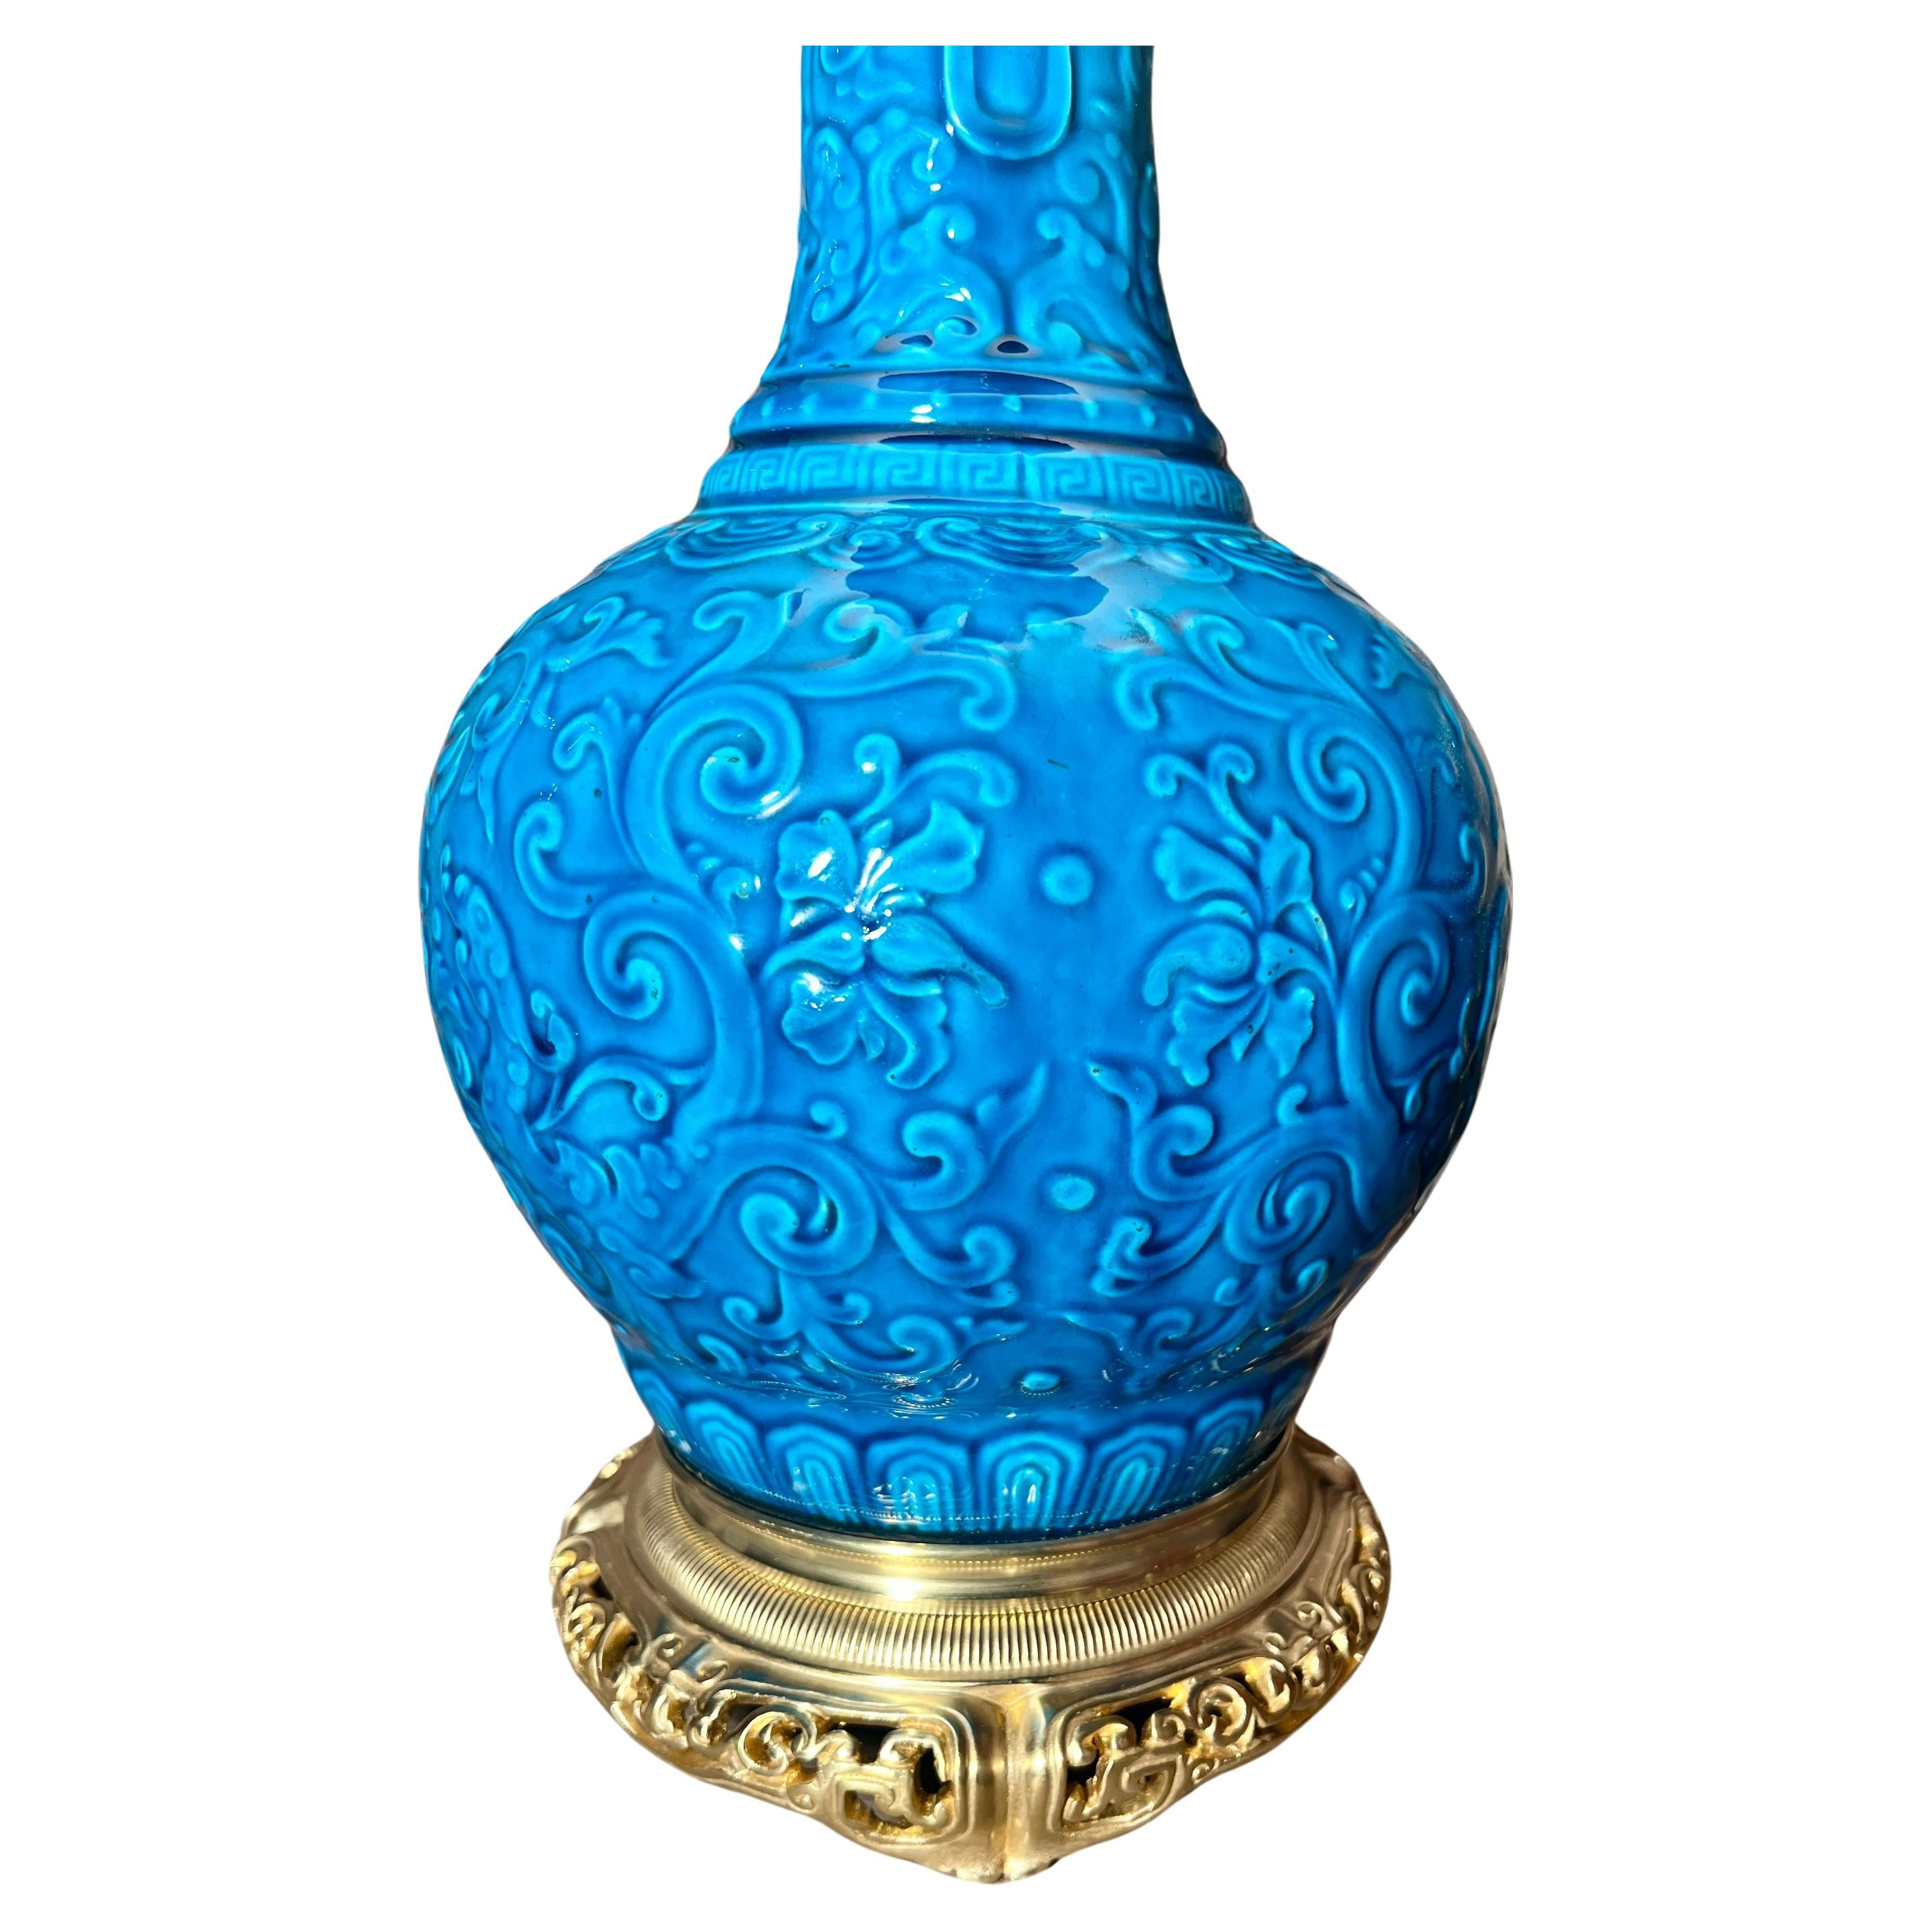 Antike Französisch Vibrant Color Blue Porzellan-Lampe mit Ormolu Halterungen, CIRCA 1885-1890.